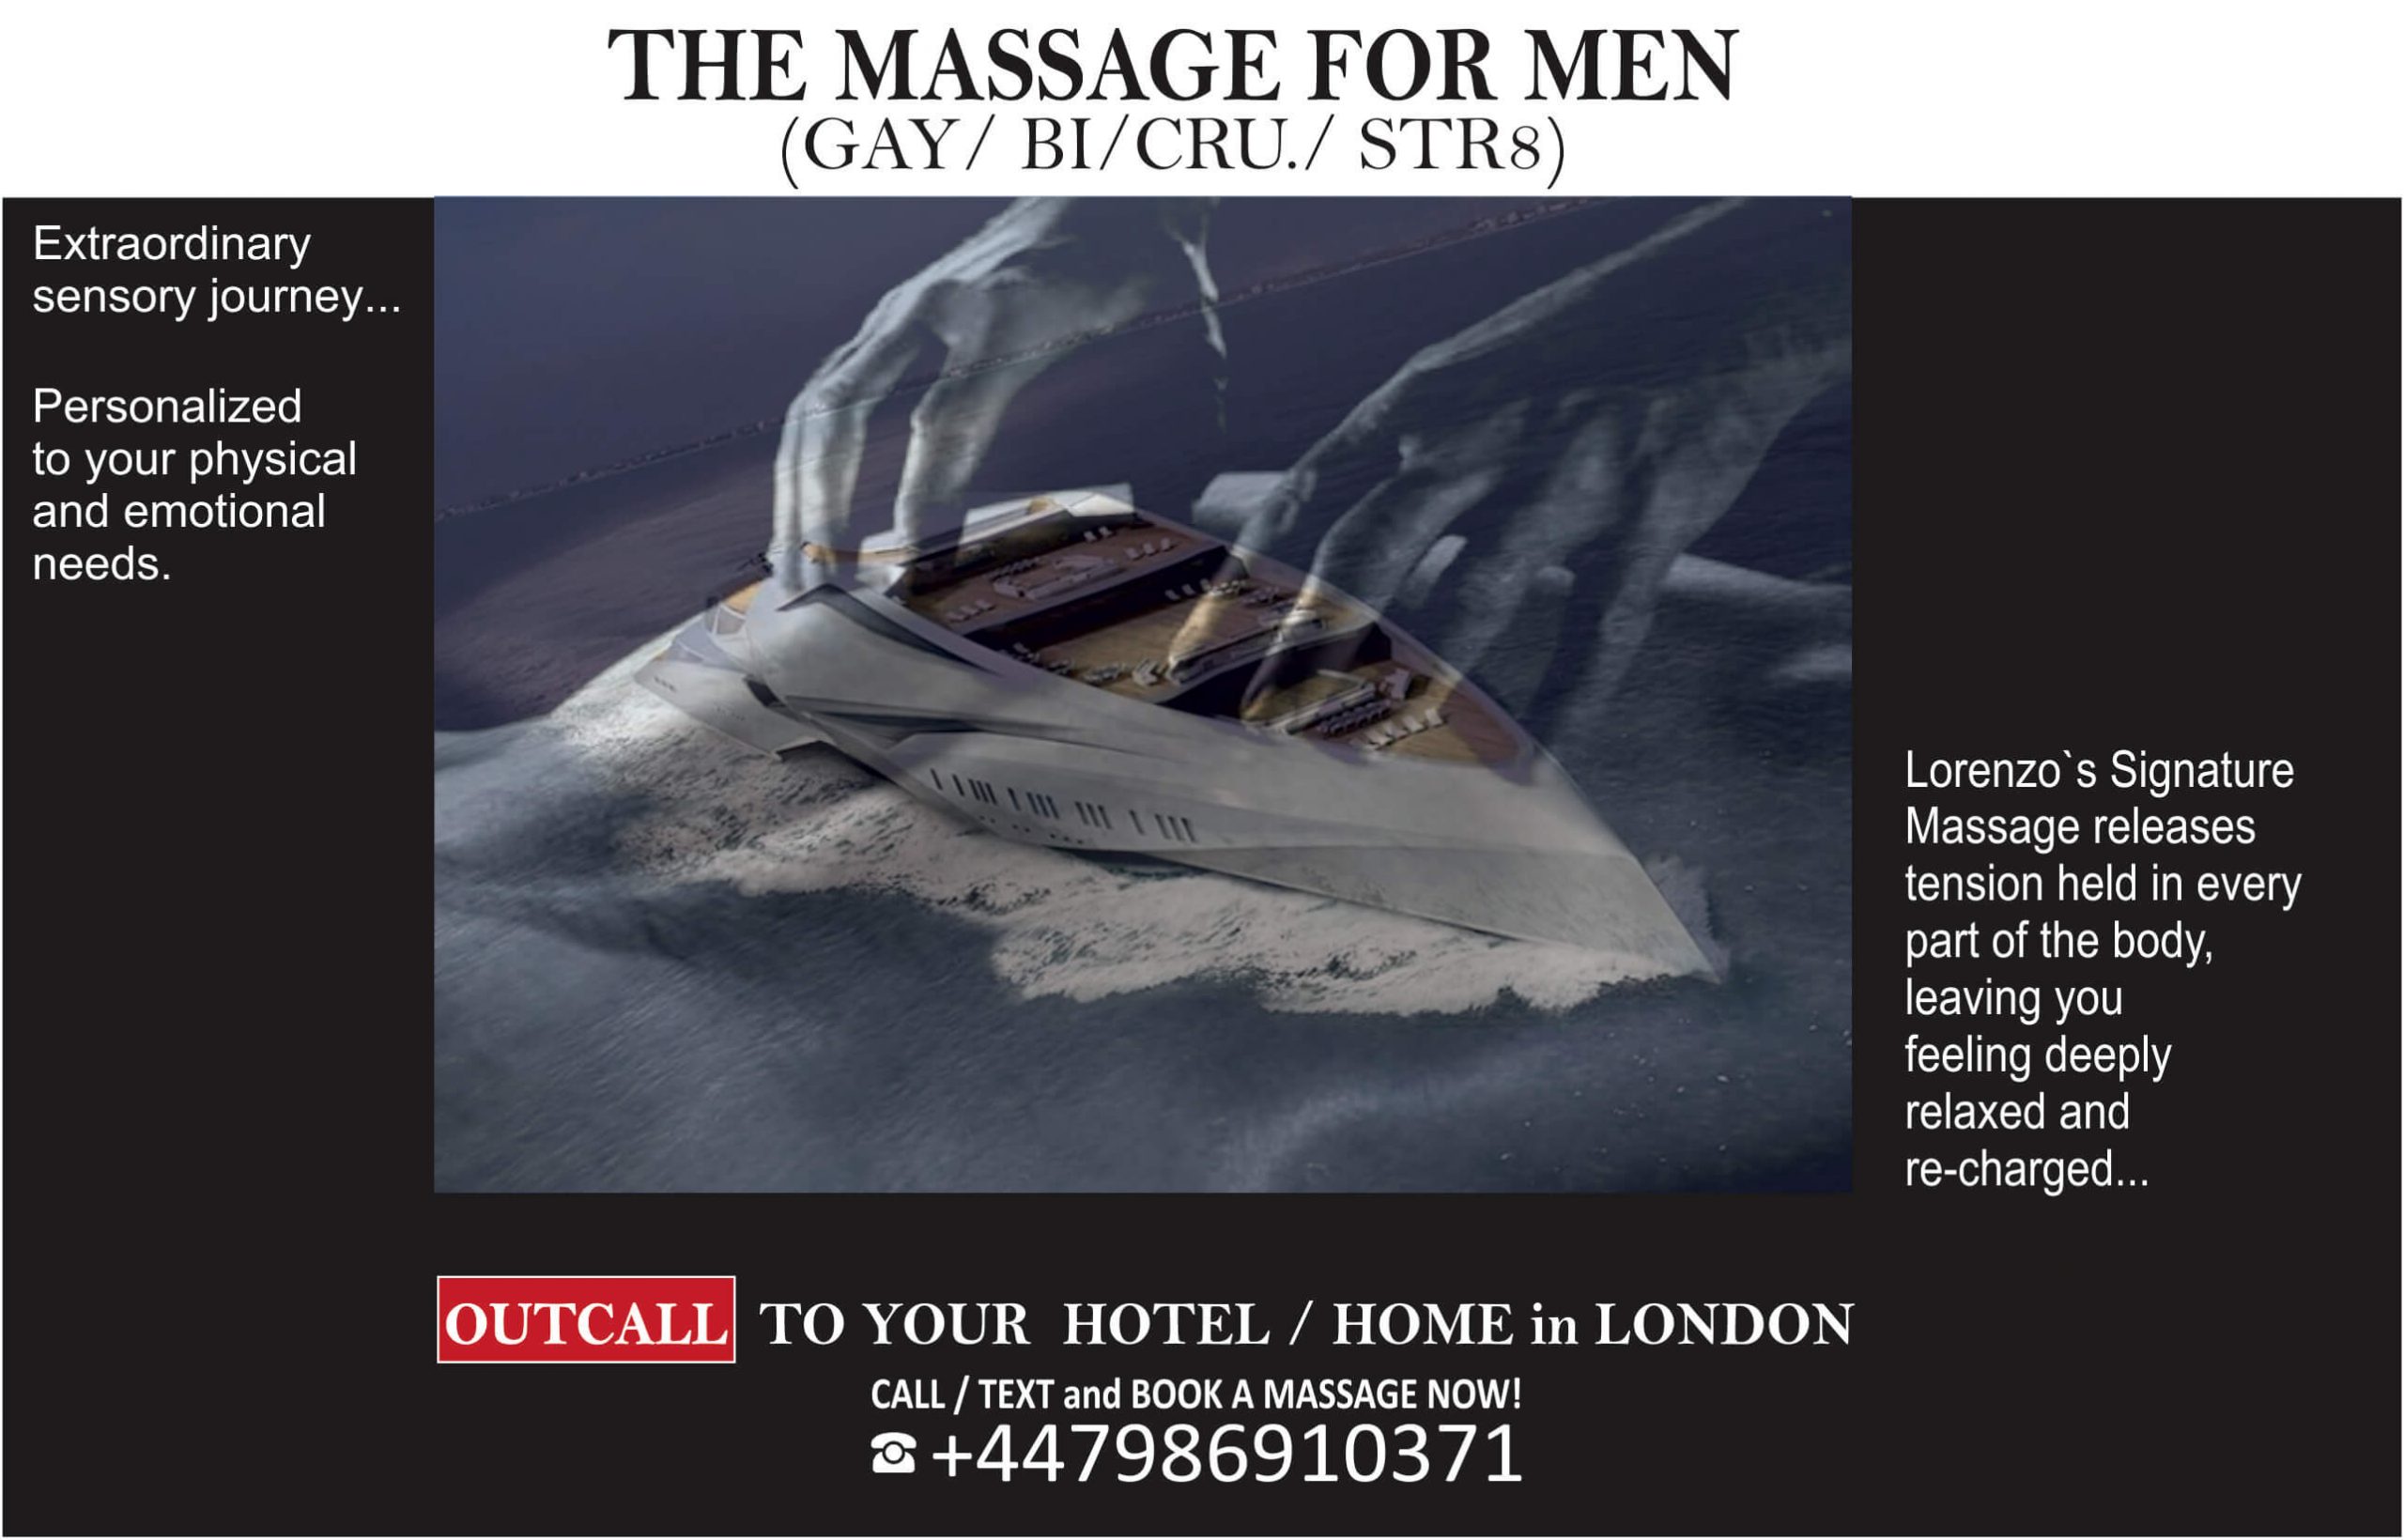 male massage london gay massage london male massage gay massage male to male massage best male massage full body massage male urban massage massage london male massage (13)